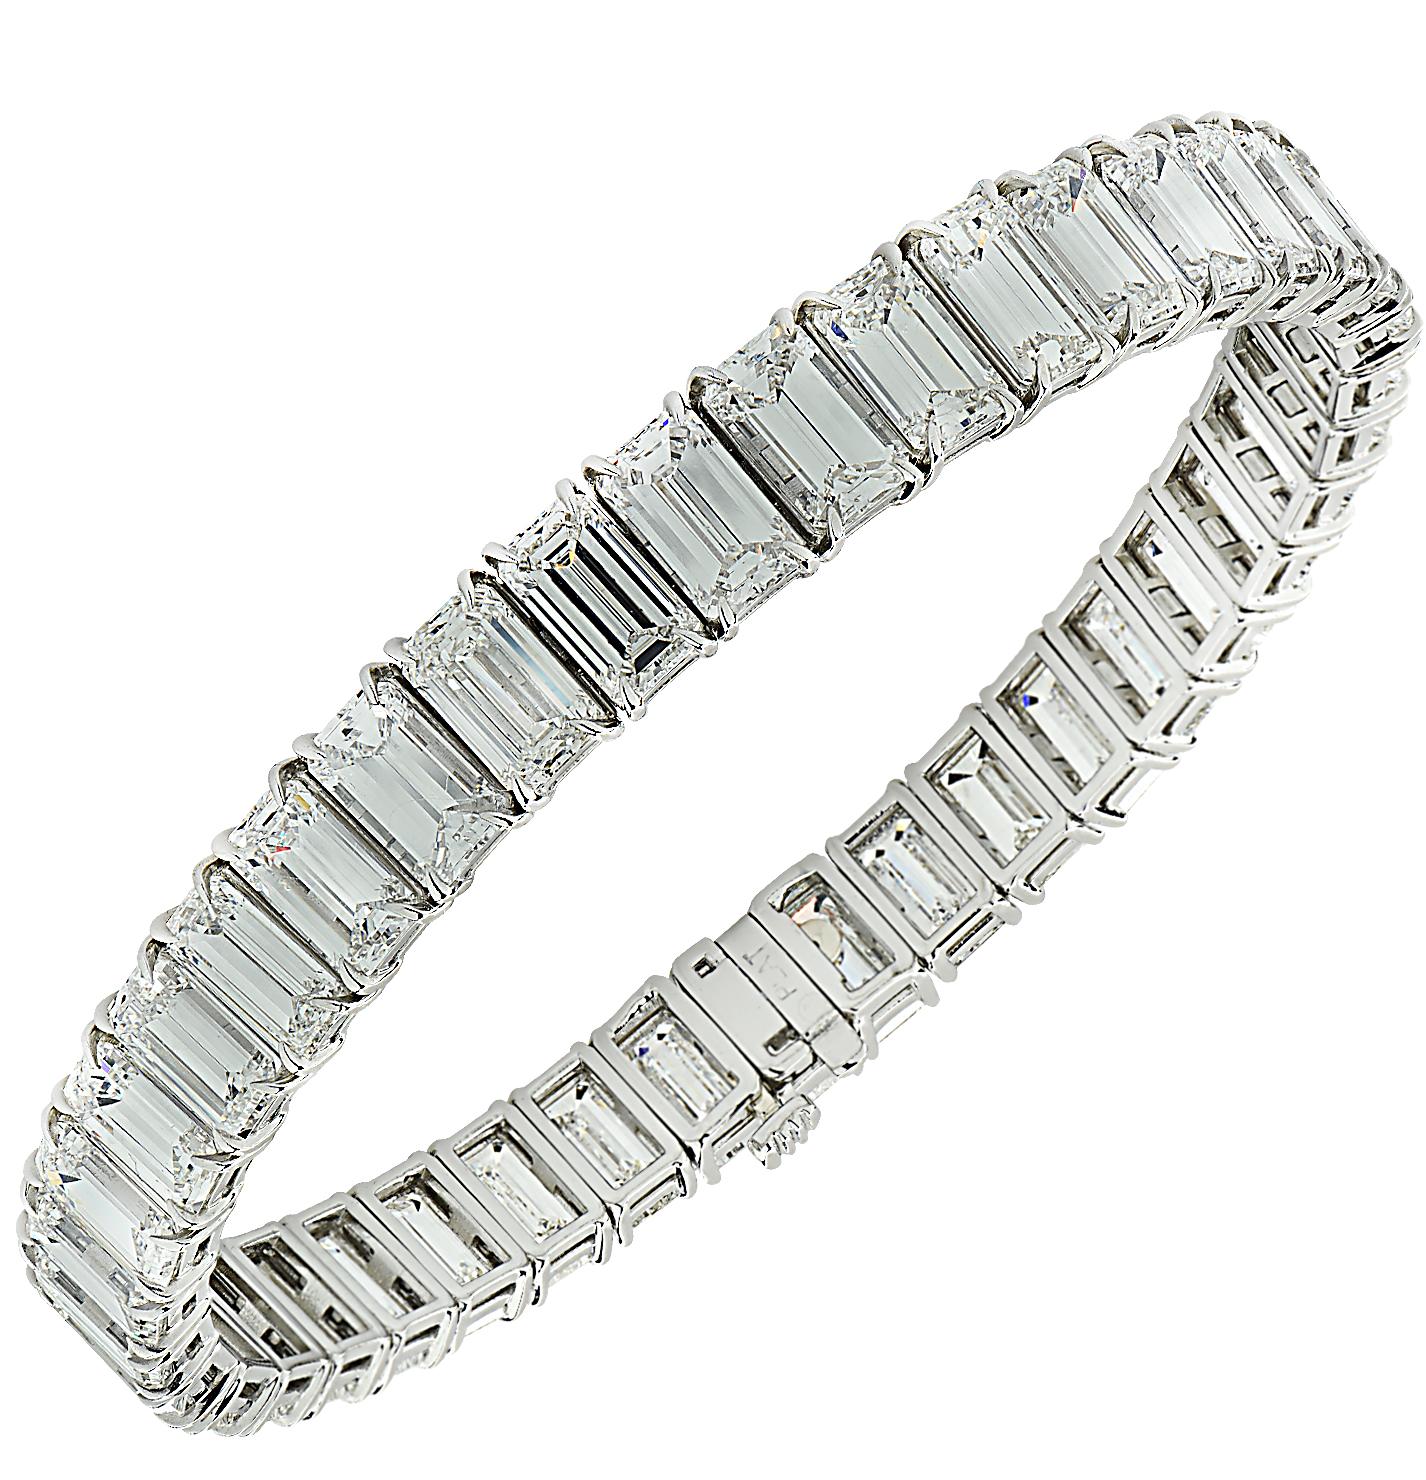 Vivid Diamonds 31.9 Carat Emerald Cut Diamond Bracelet For Sale 1